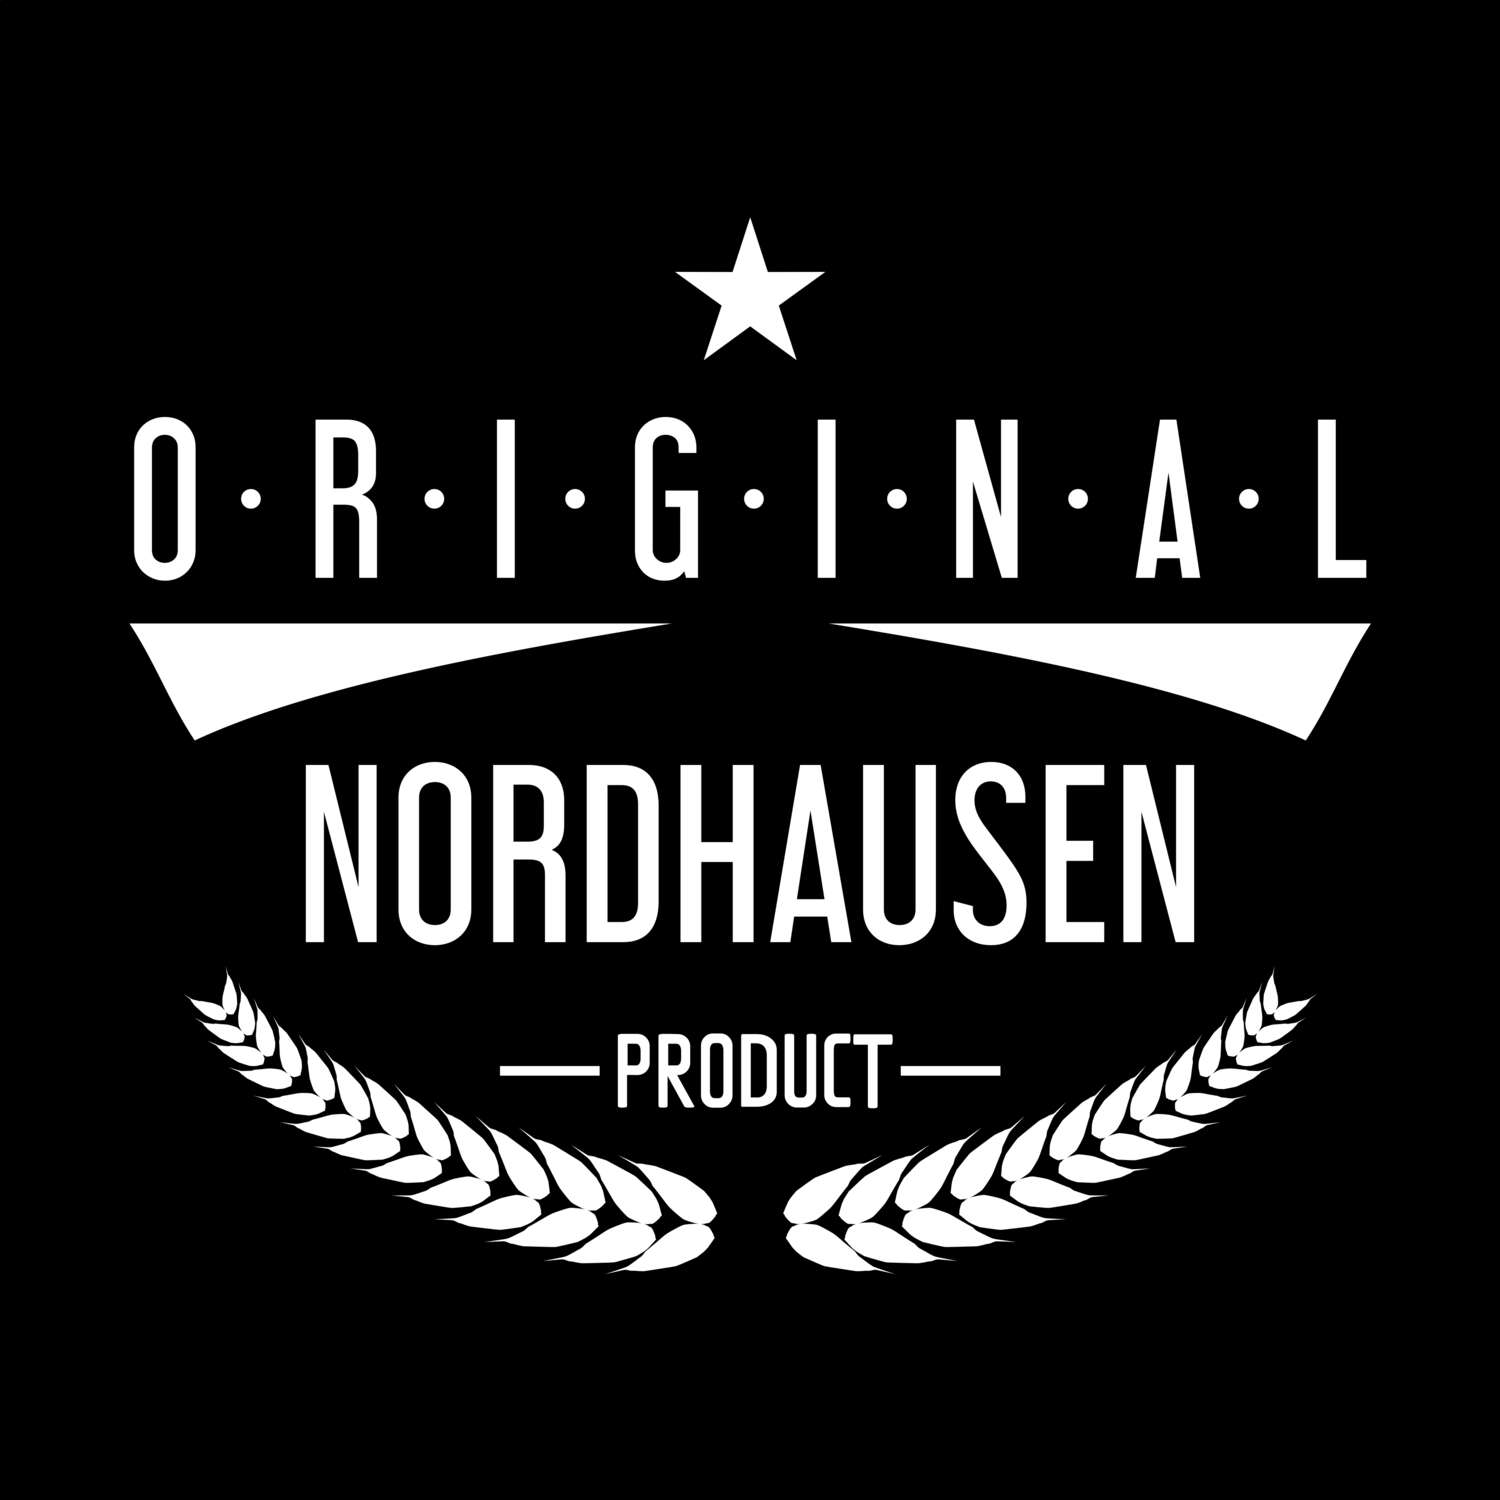 Nordhausen T-Shirt »Original Product«